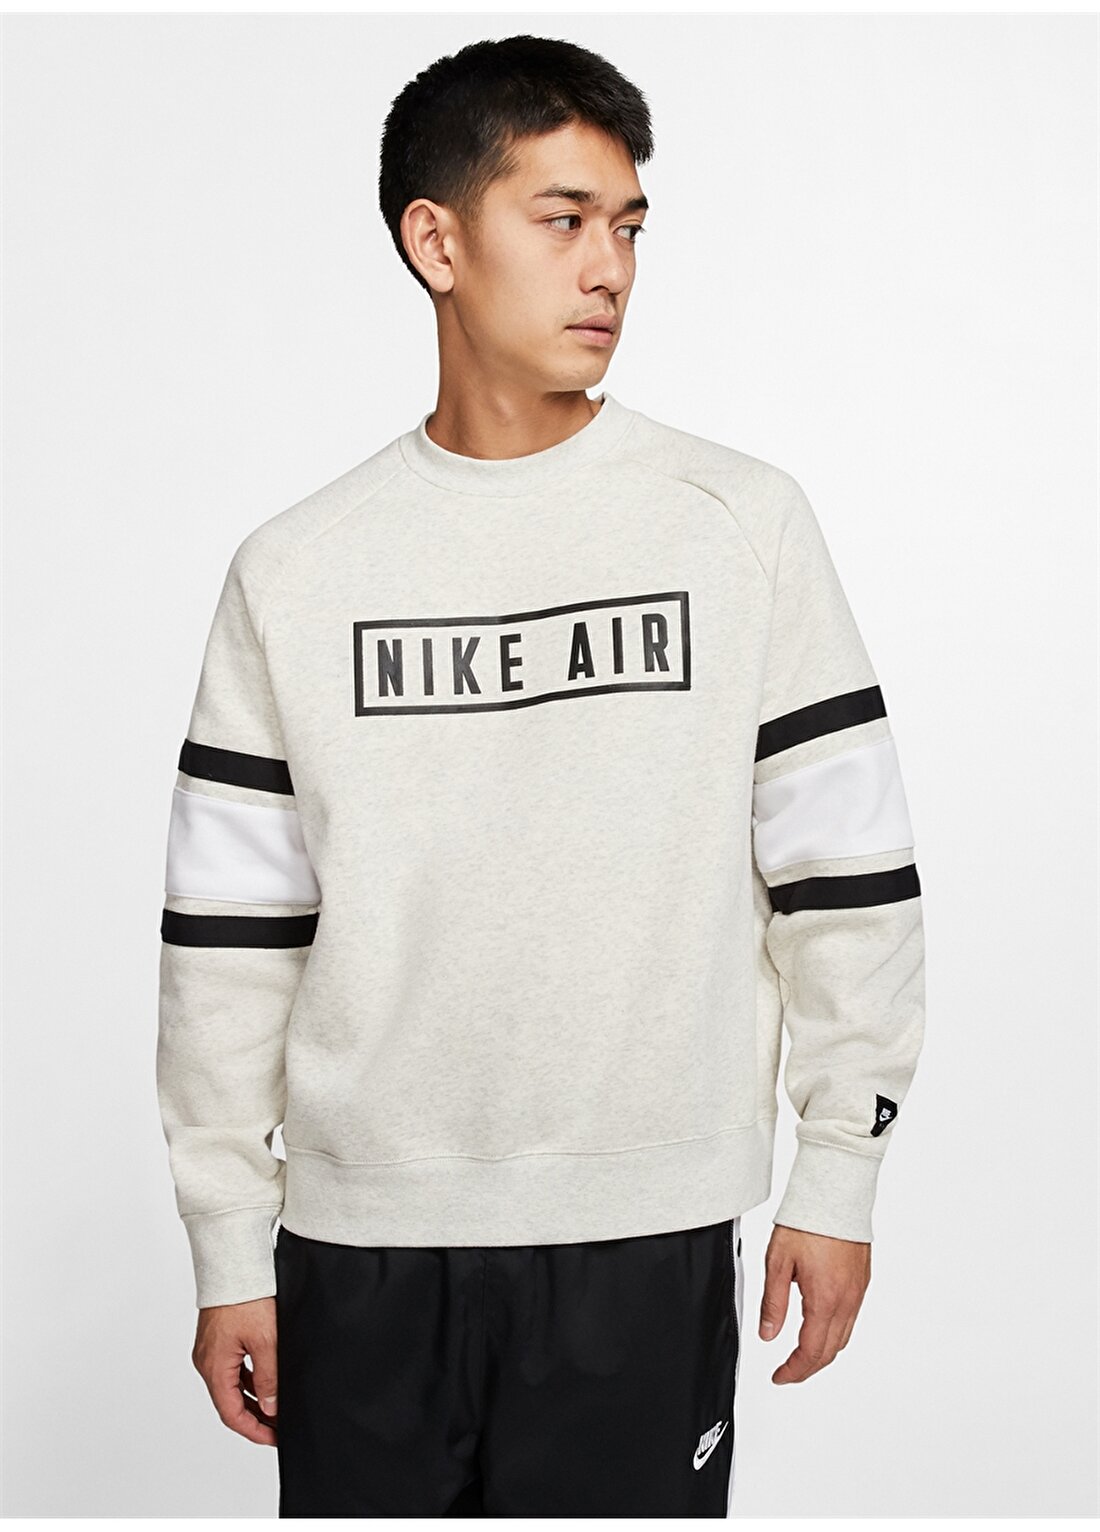 Nike Air Yünlü Crew Sweatshirt